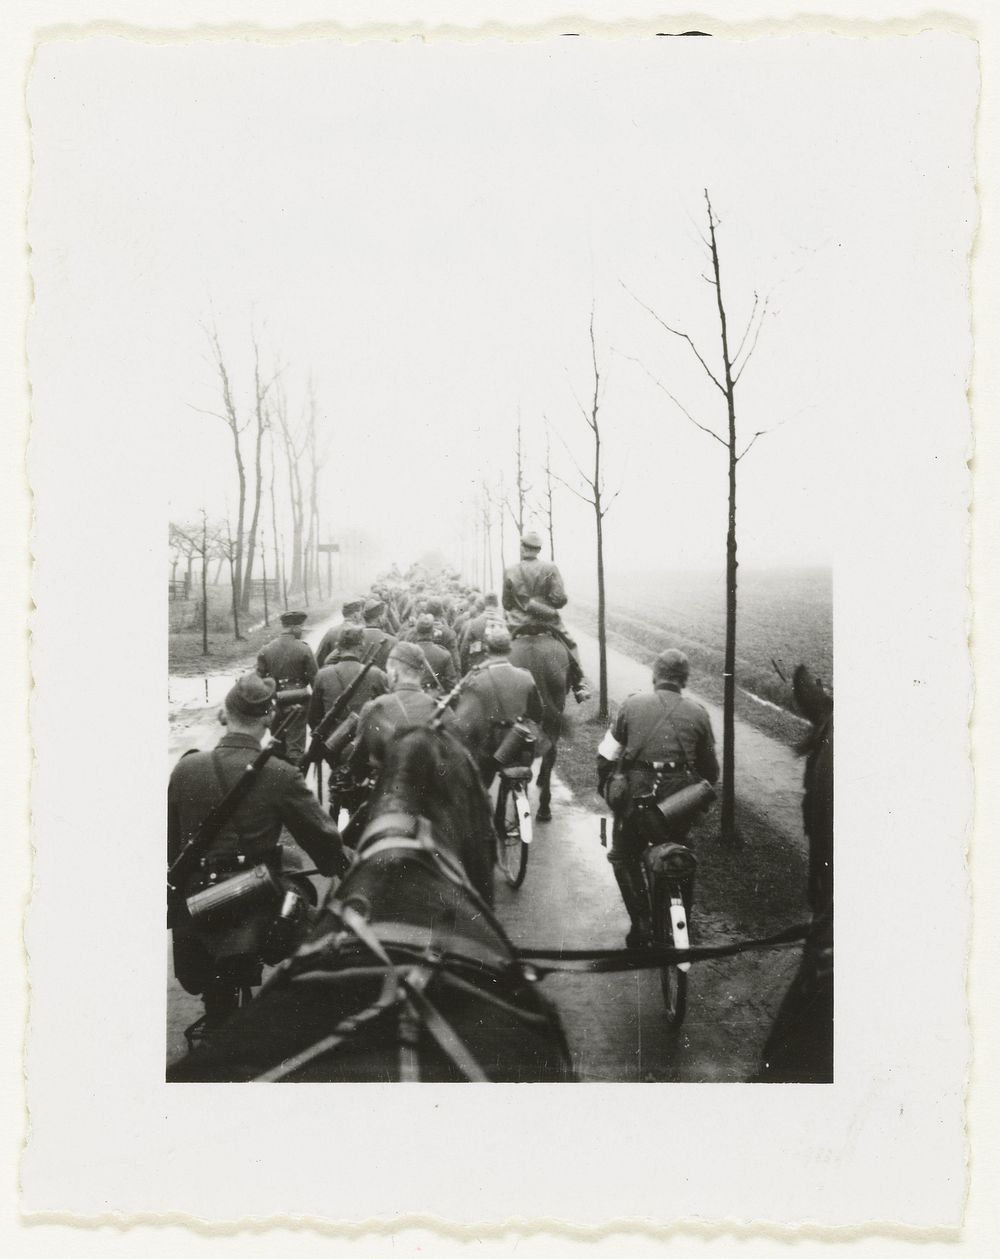 Colonne Duitse soldaten (1941) by anonymous